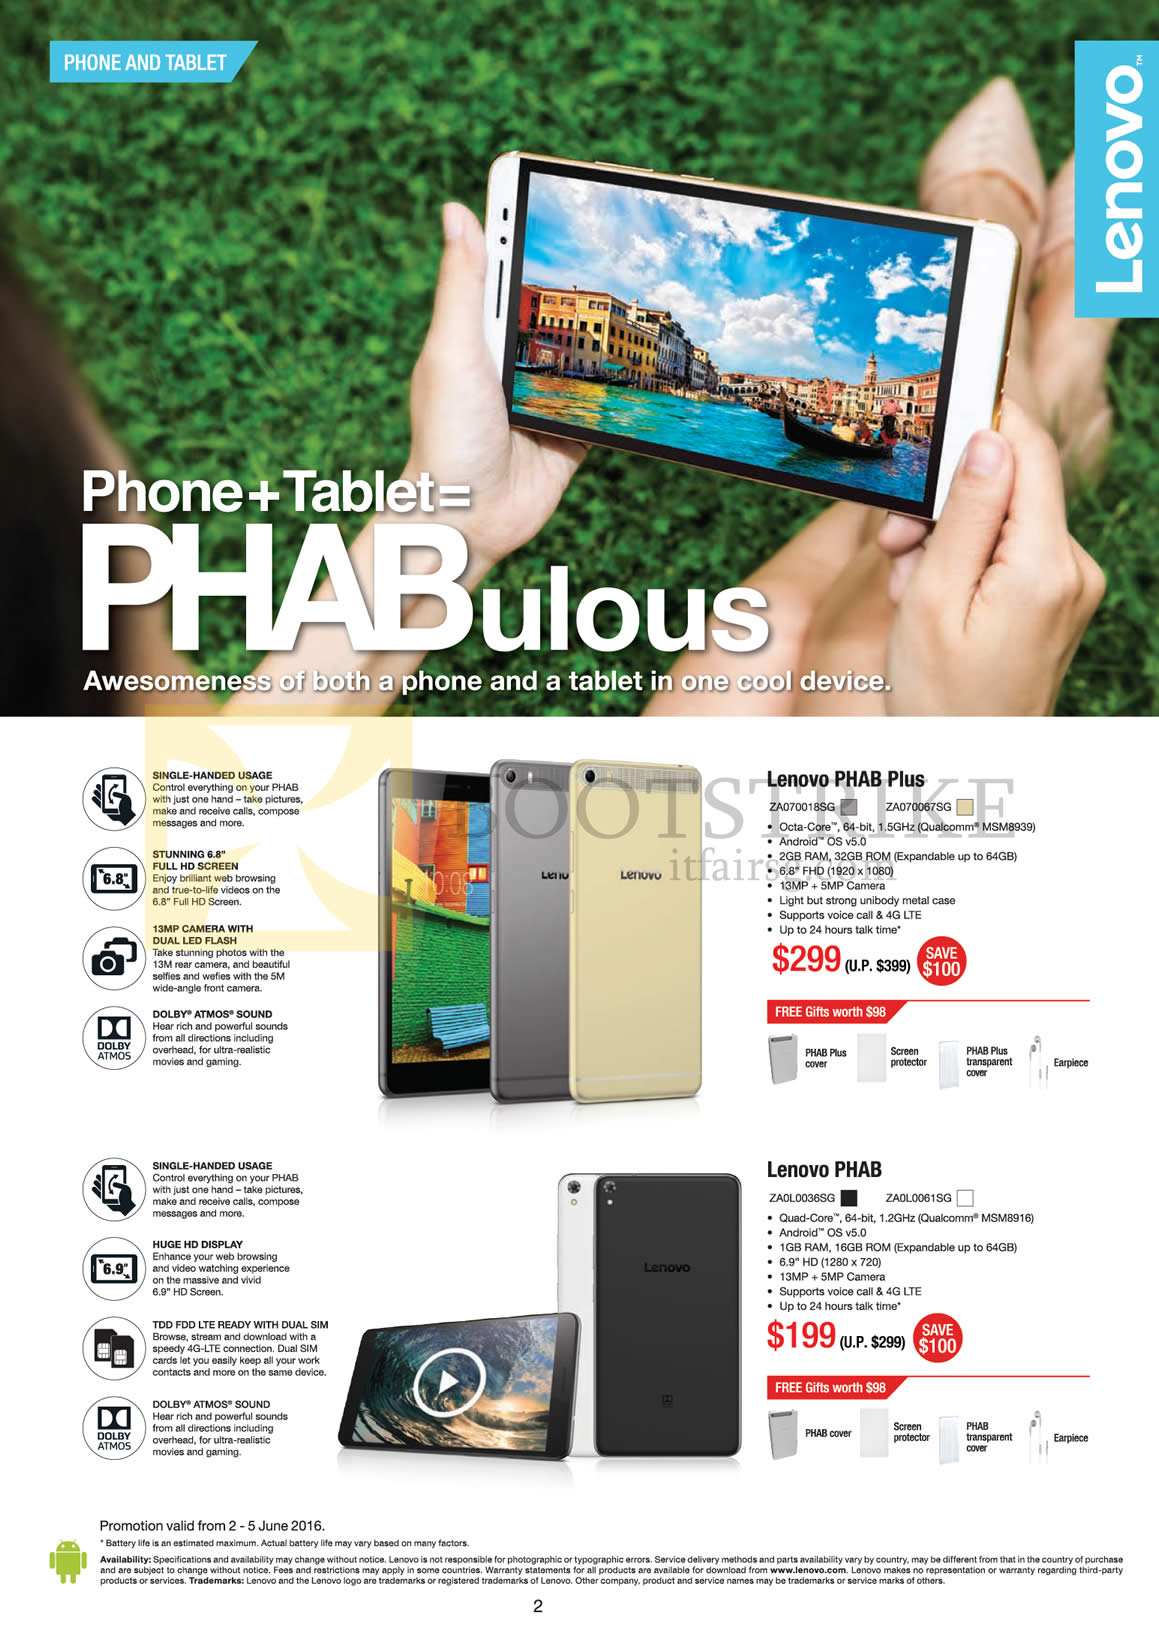 PC SHOW 2016 price list image brochure of Lenovo Phablets Phone Tablet Phab Plus, Phab